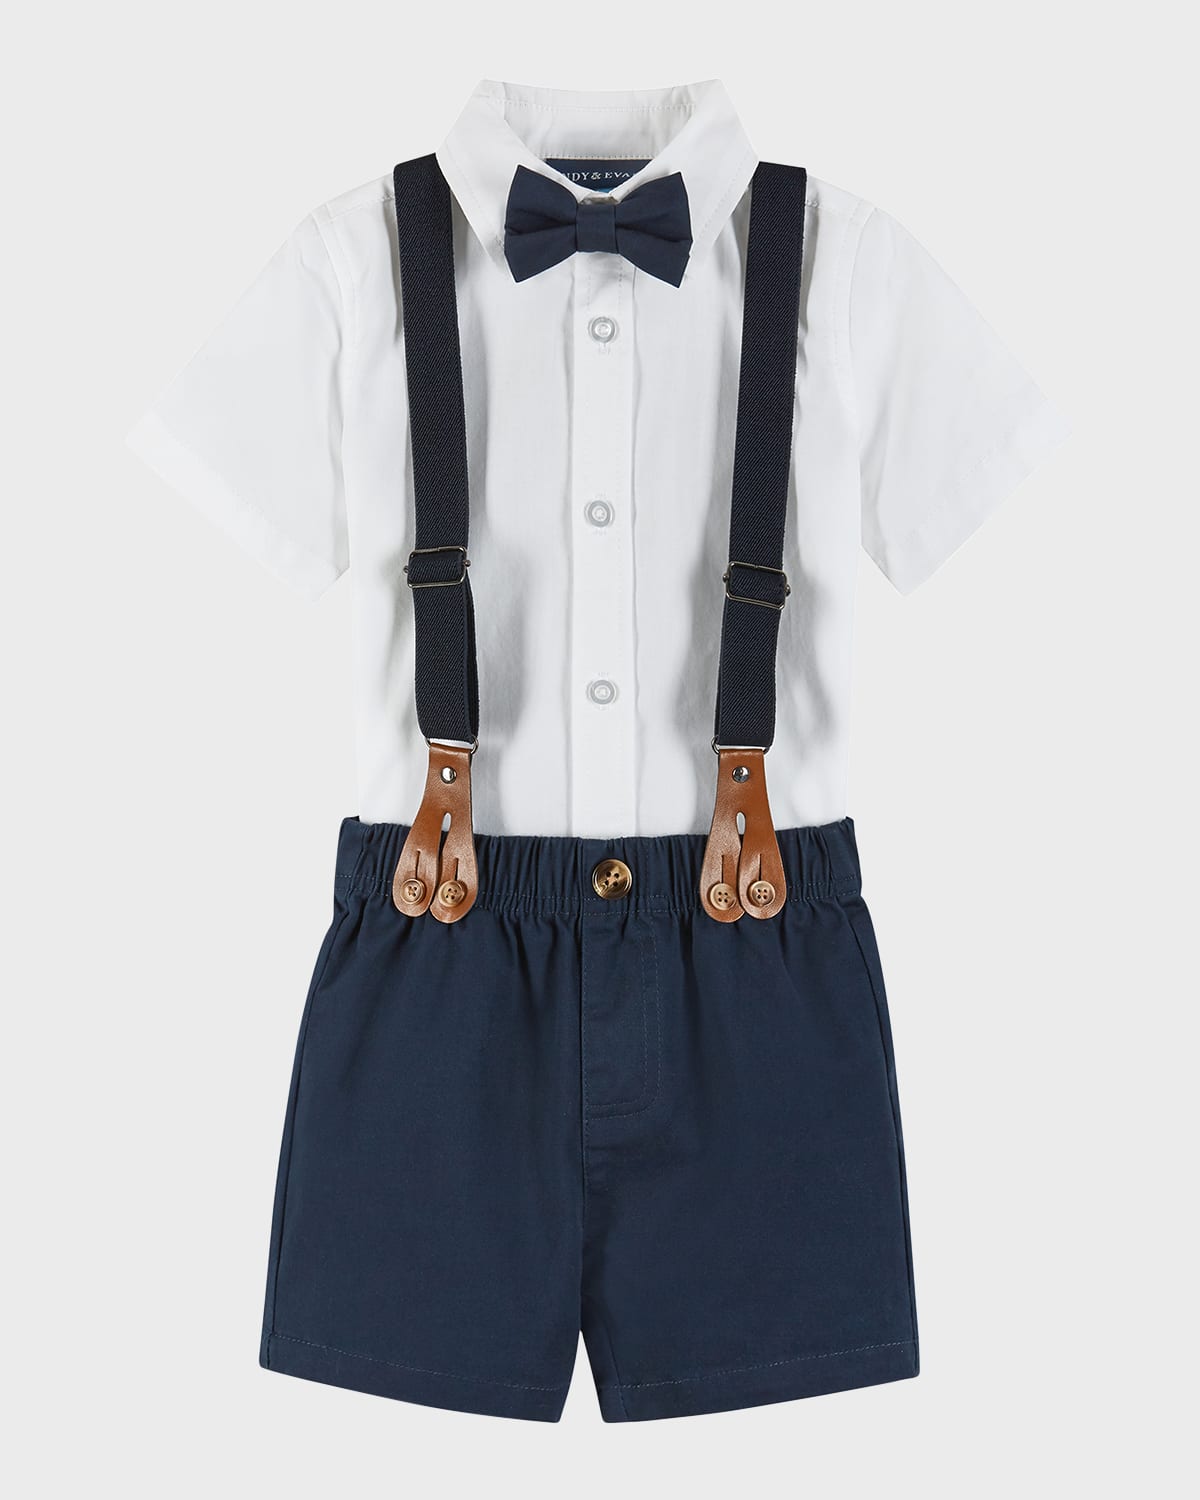 Andy & Evan Kids' Boy's Four-piece Suspender Set In Multi